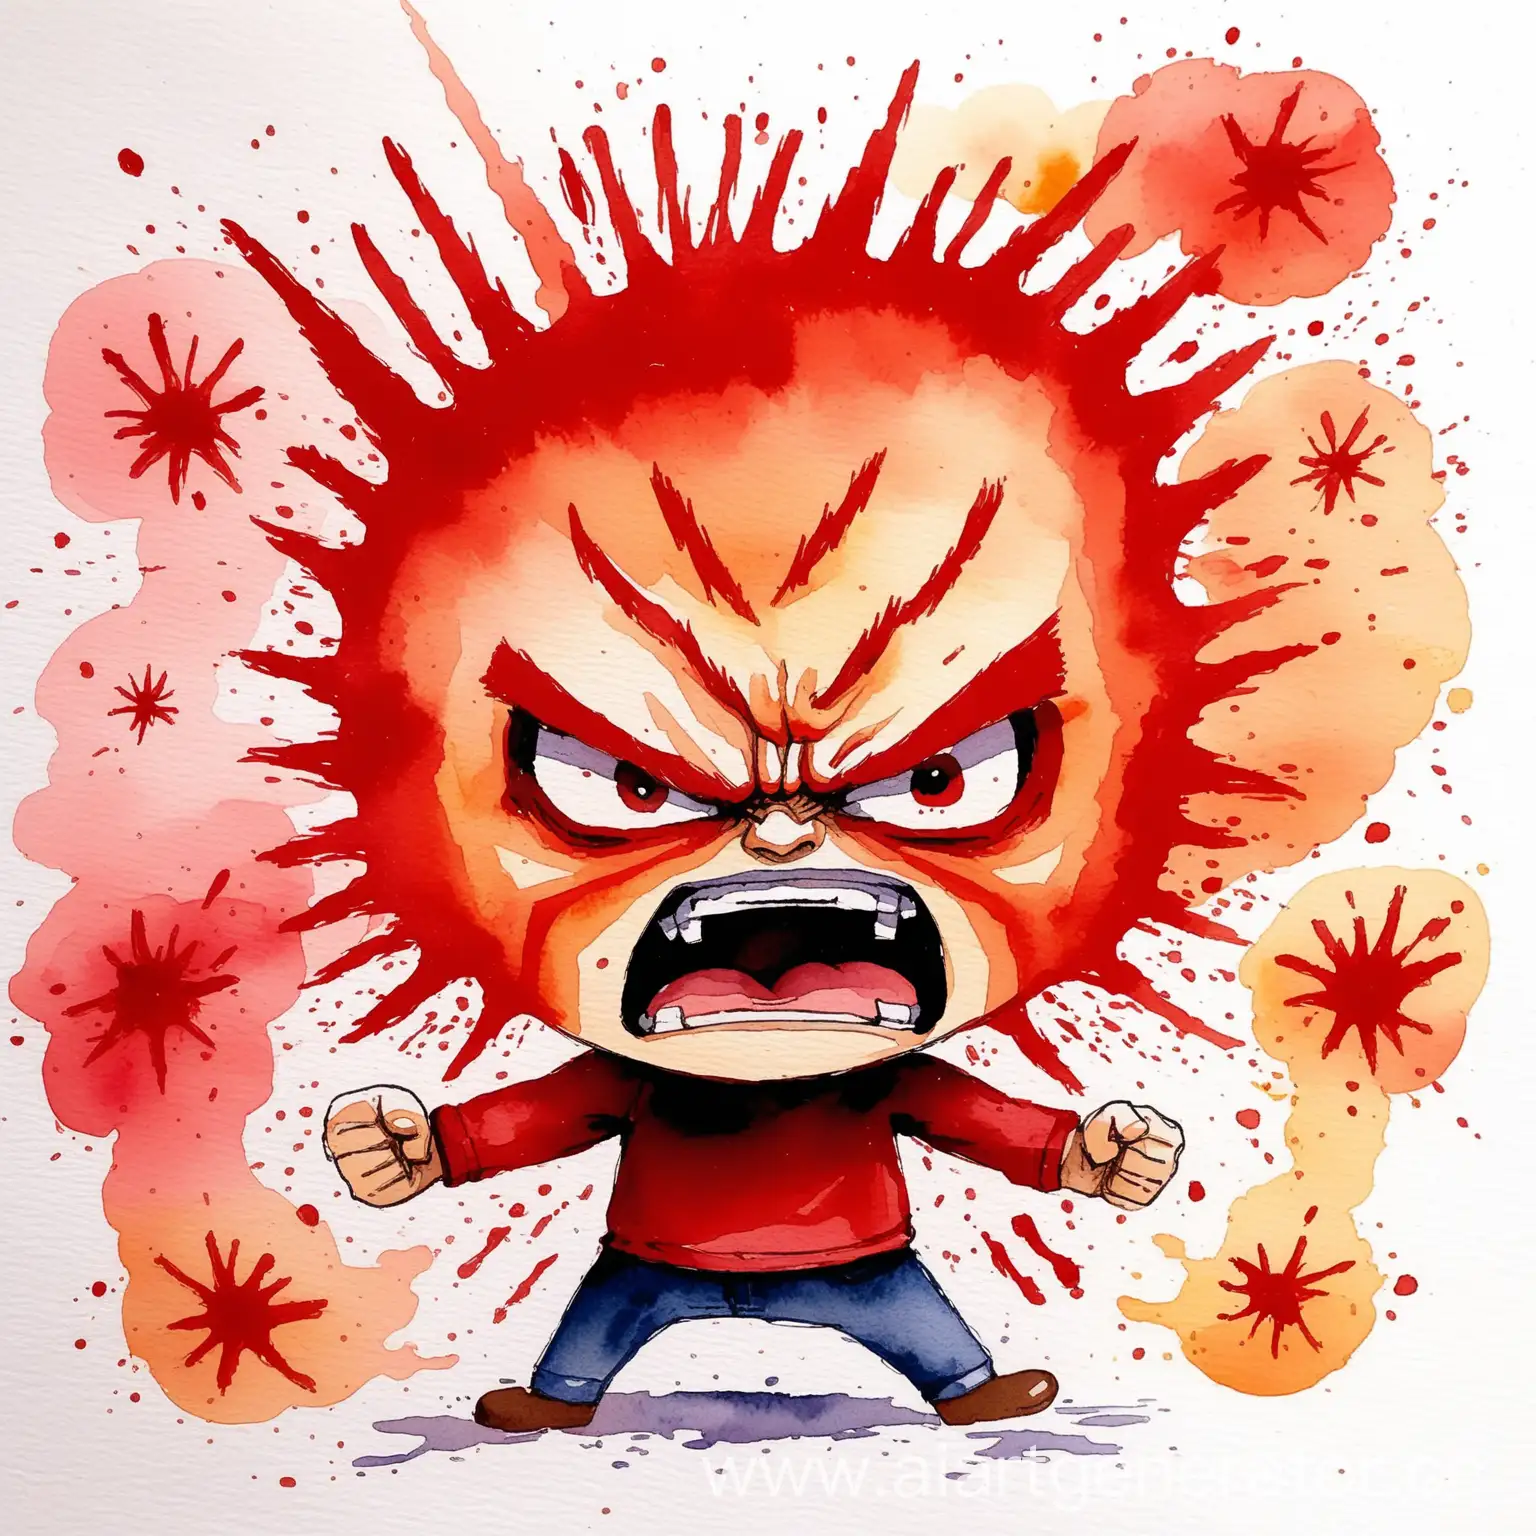 иллюстрация в акварельной технике про злость